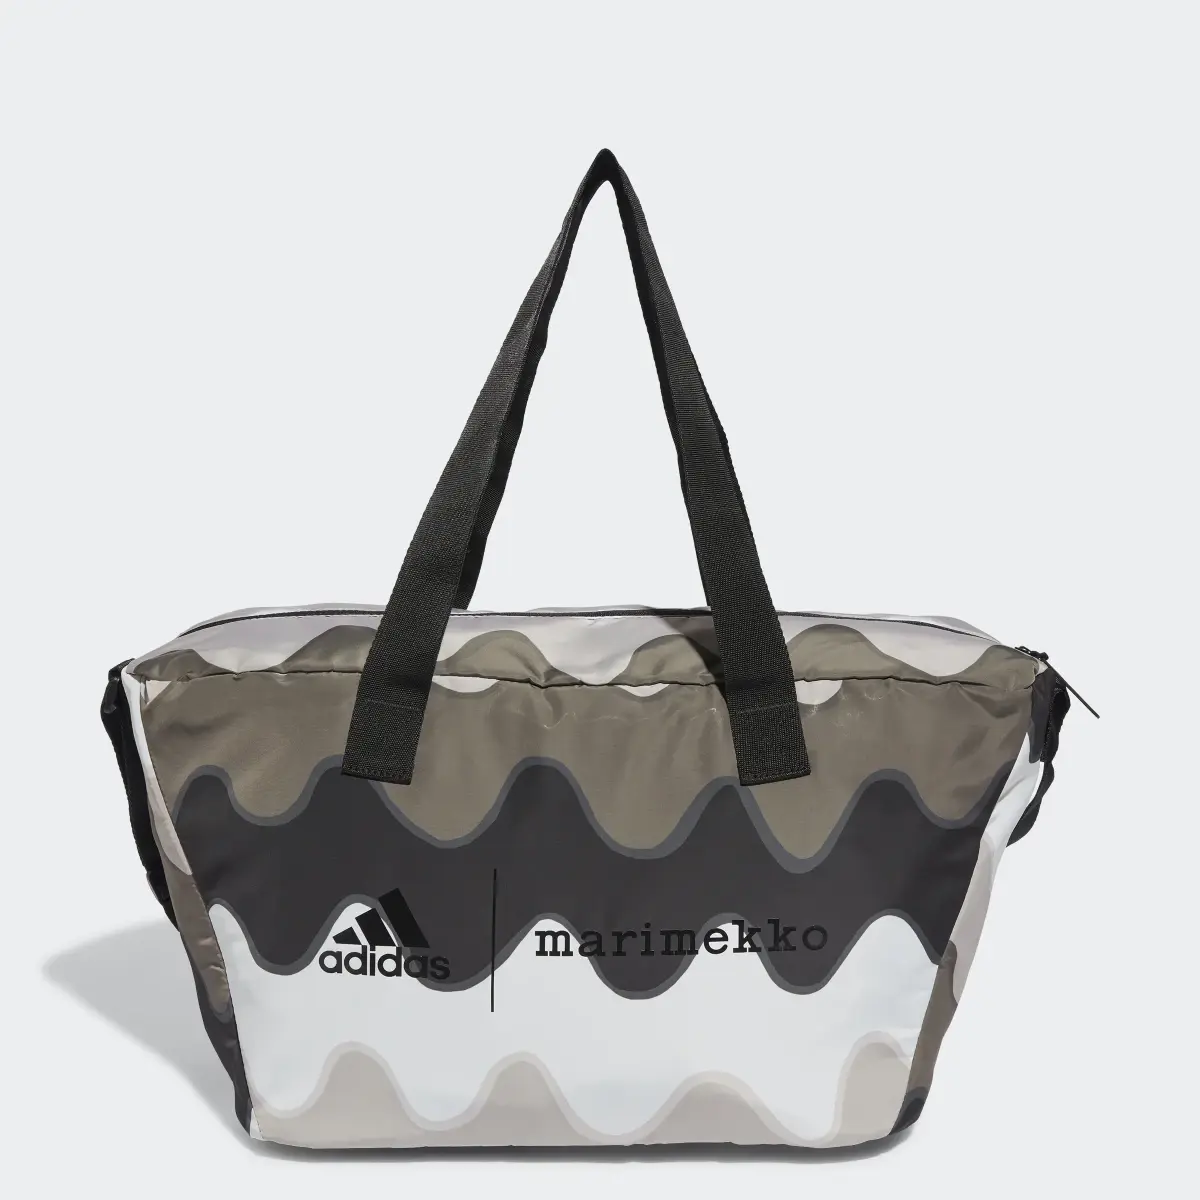 Adidas x Marimekko Shopper Designed to Move Training Bag. 1